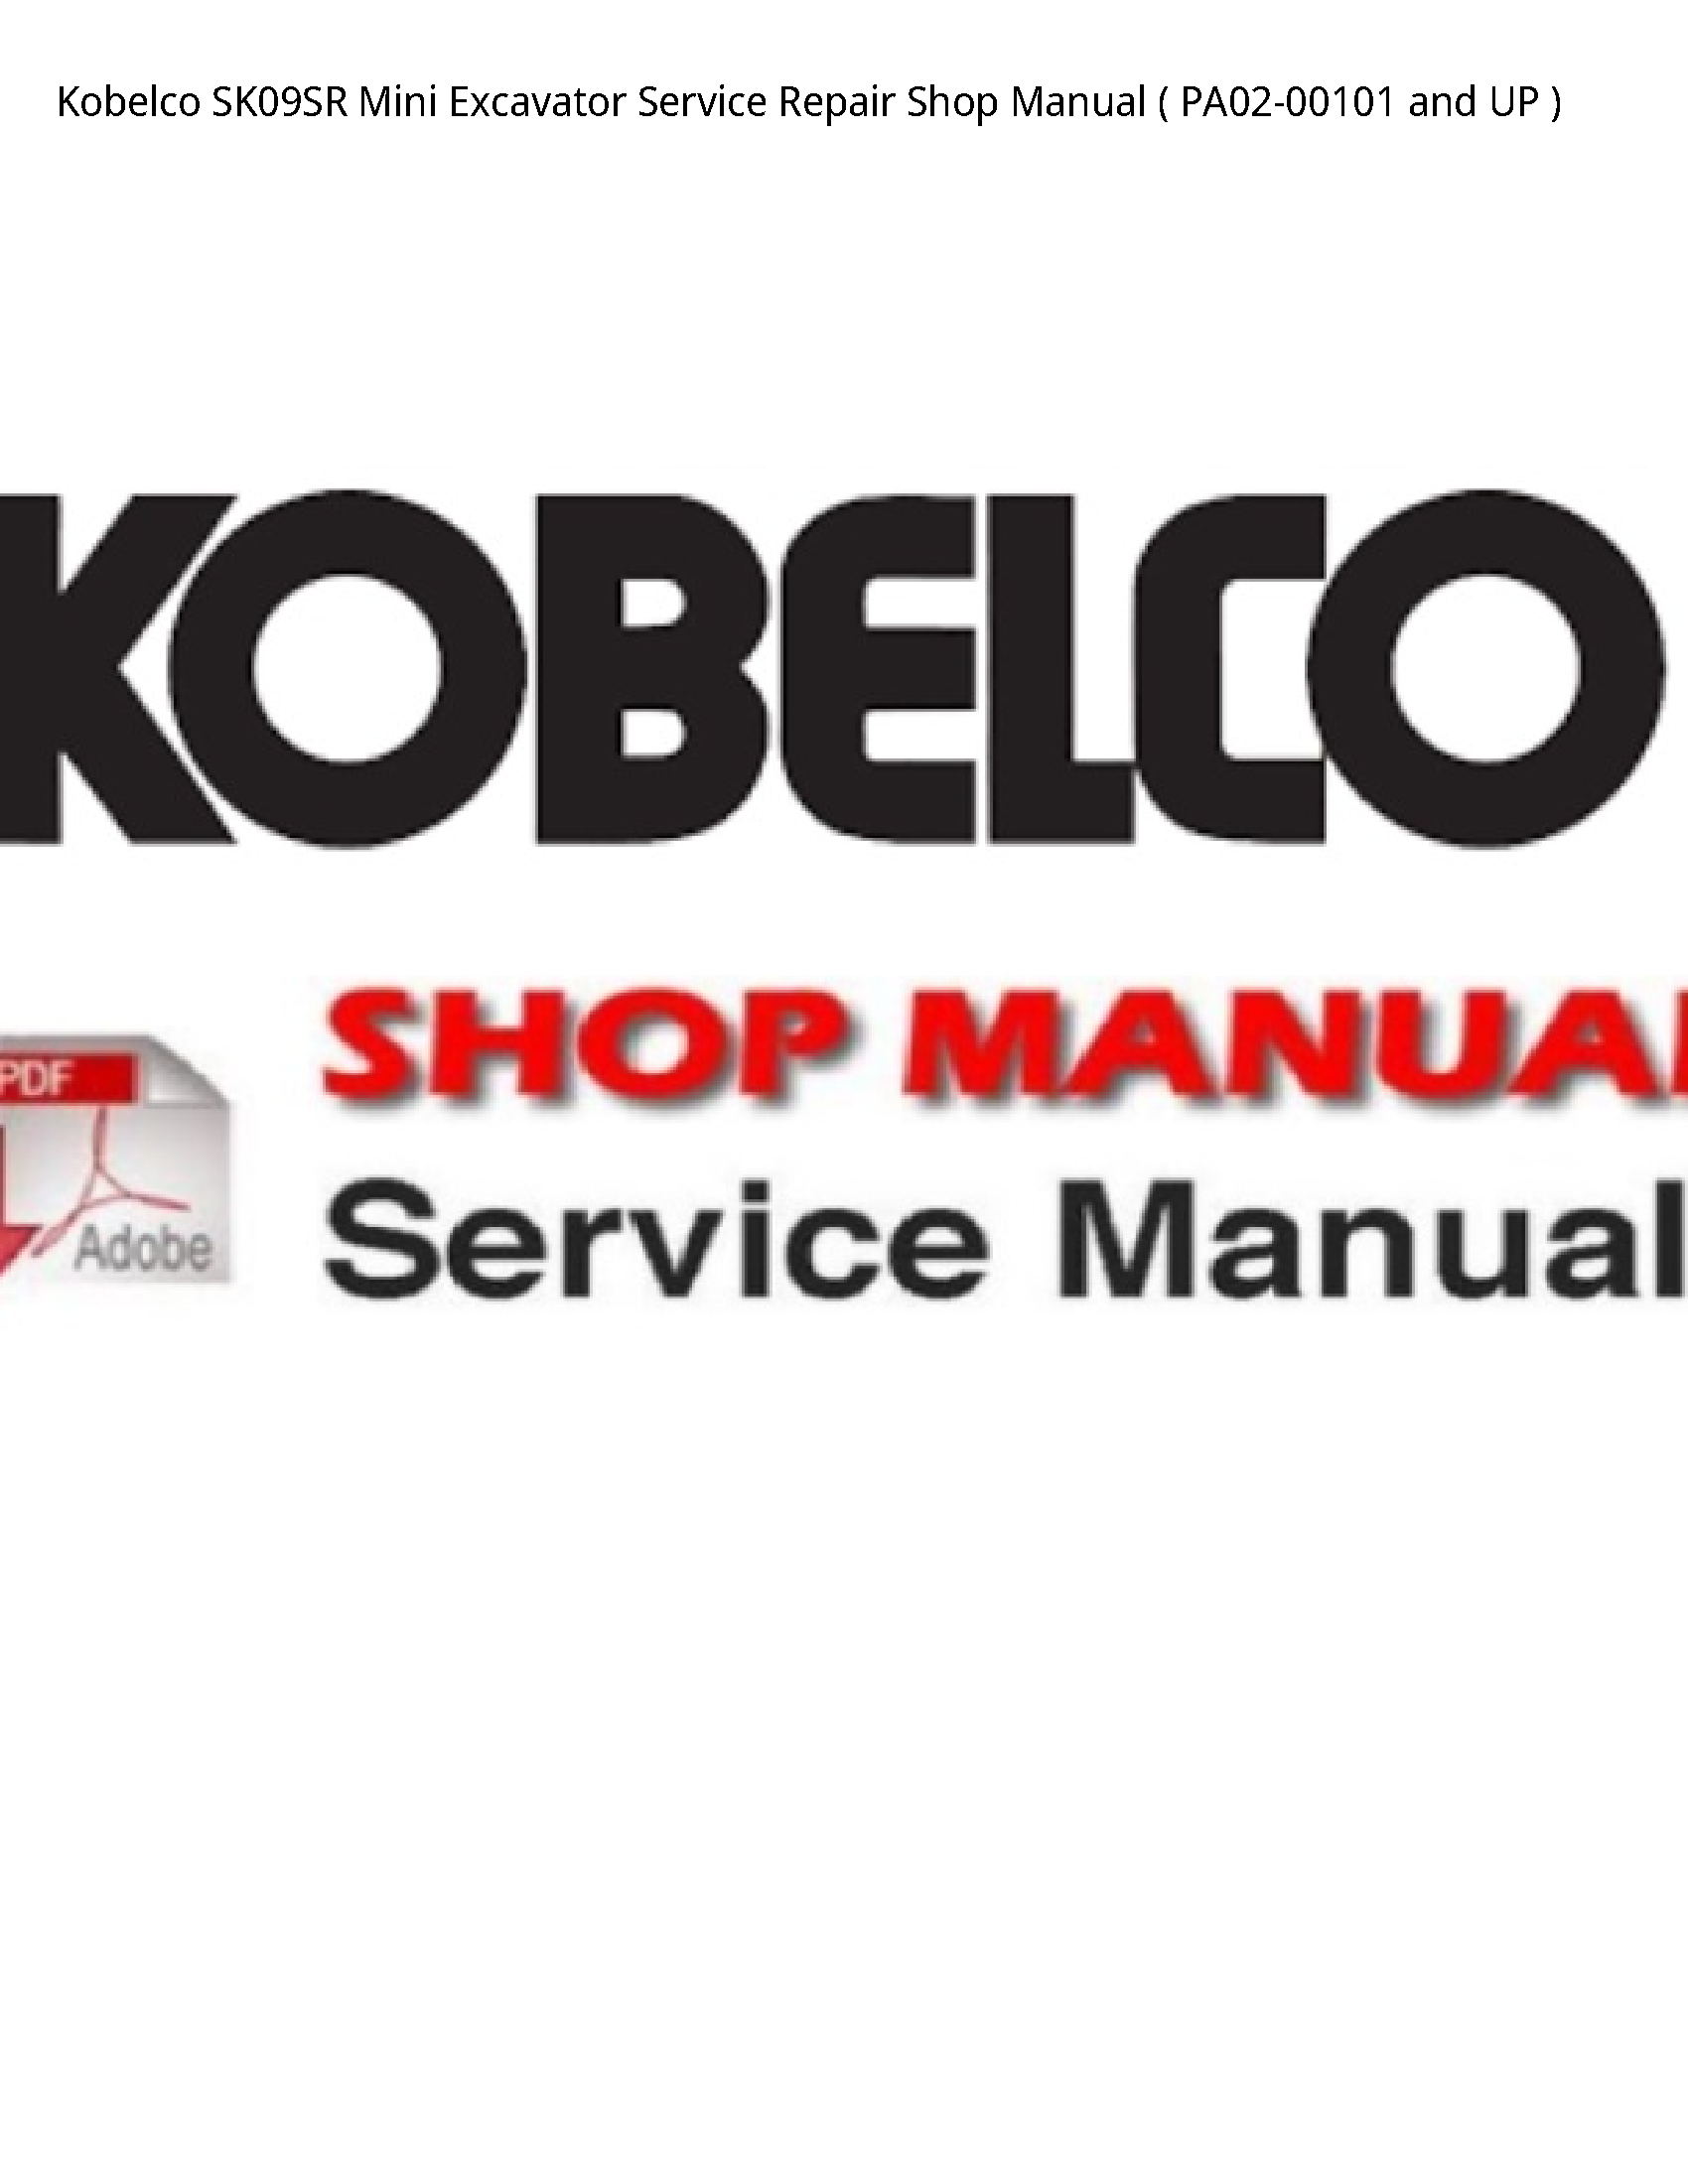 Kobelco SK09SR Mini Excavator manual